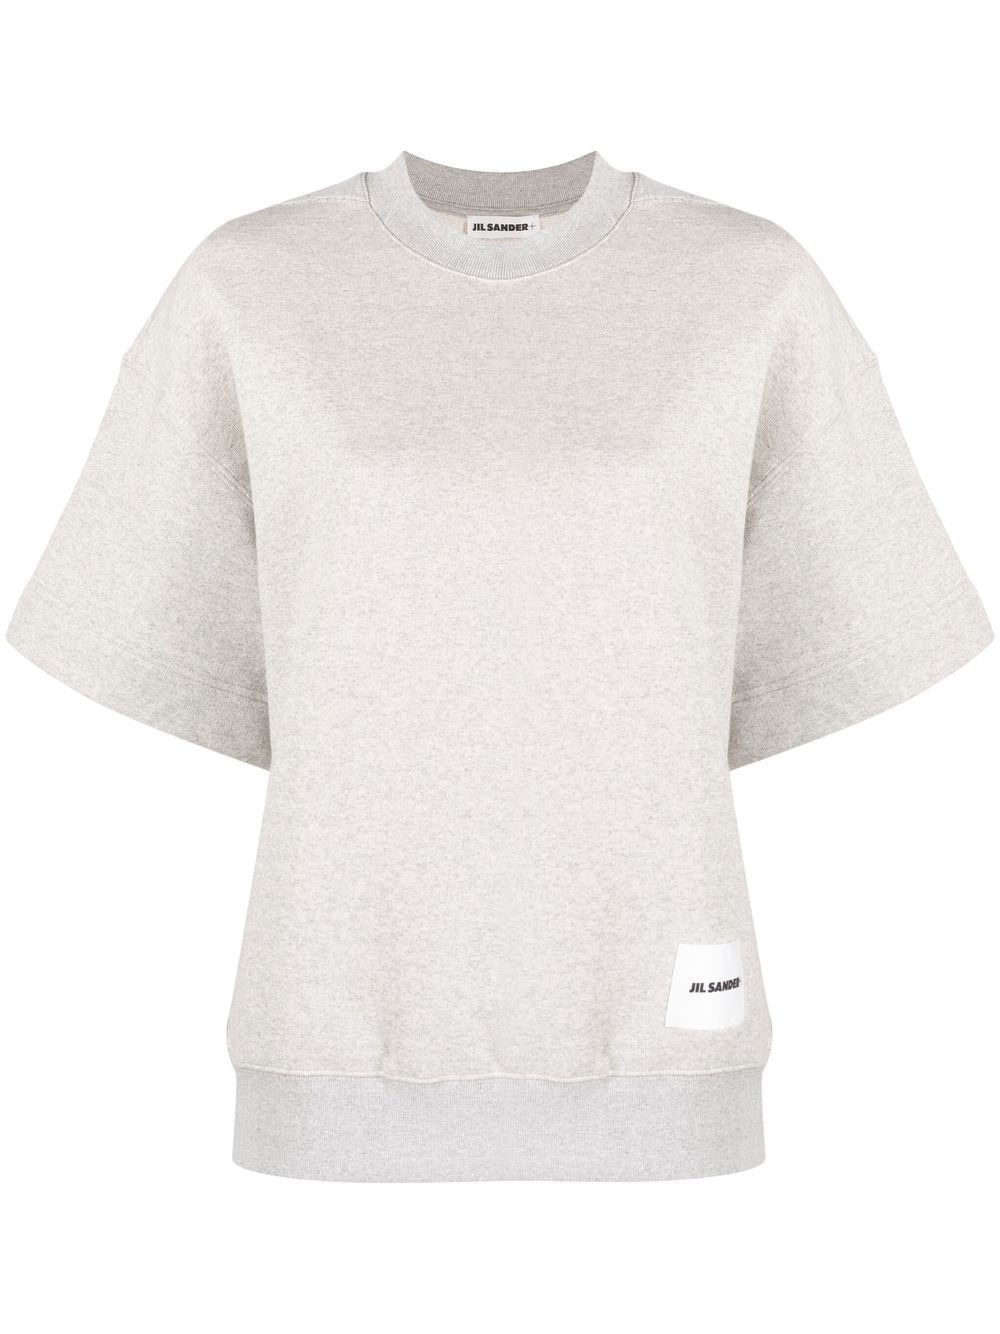 Jil Sander Short Sleeve Sweater In Gray